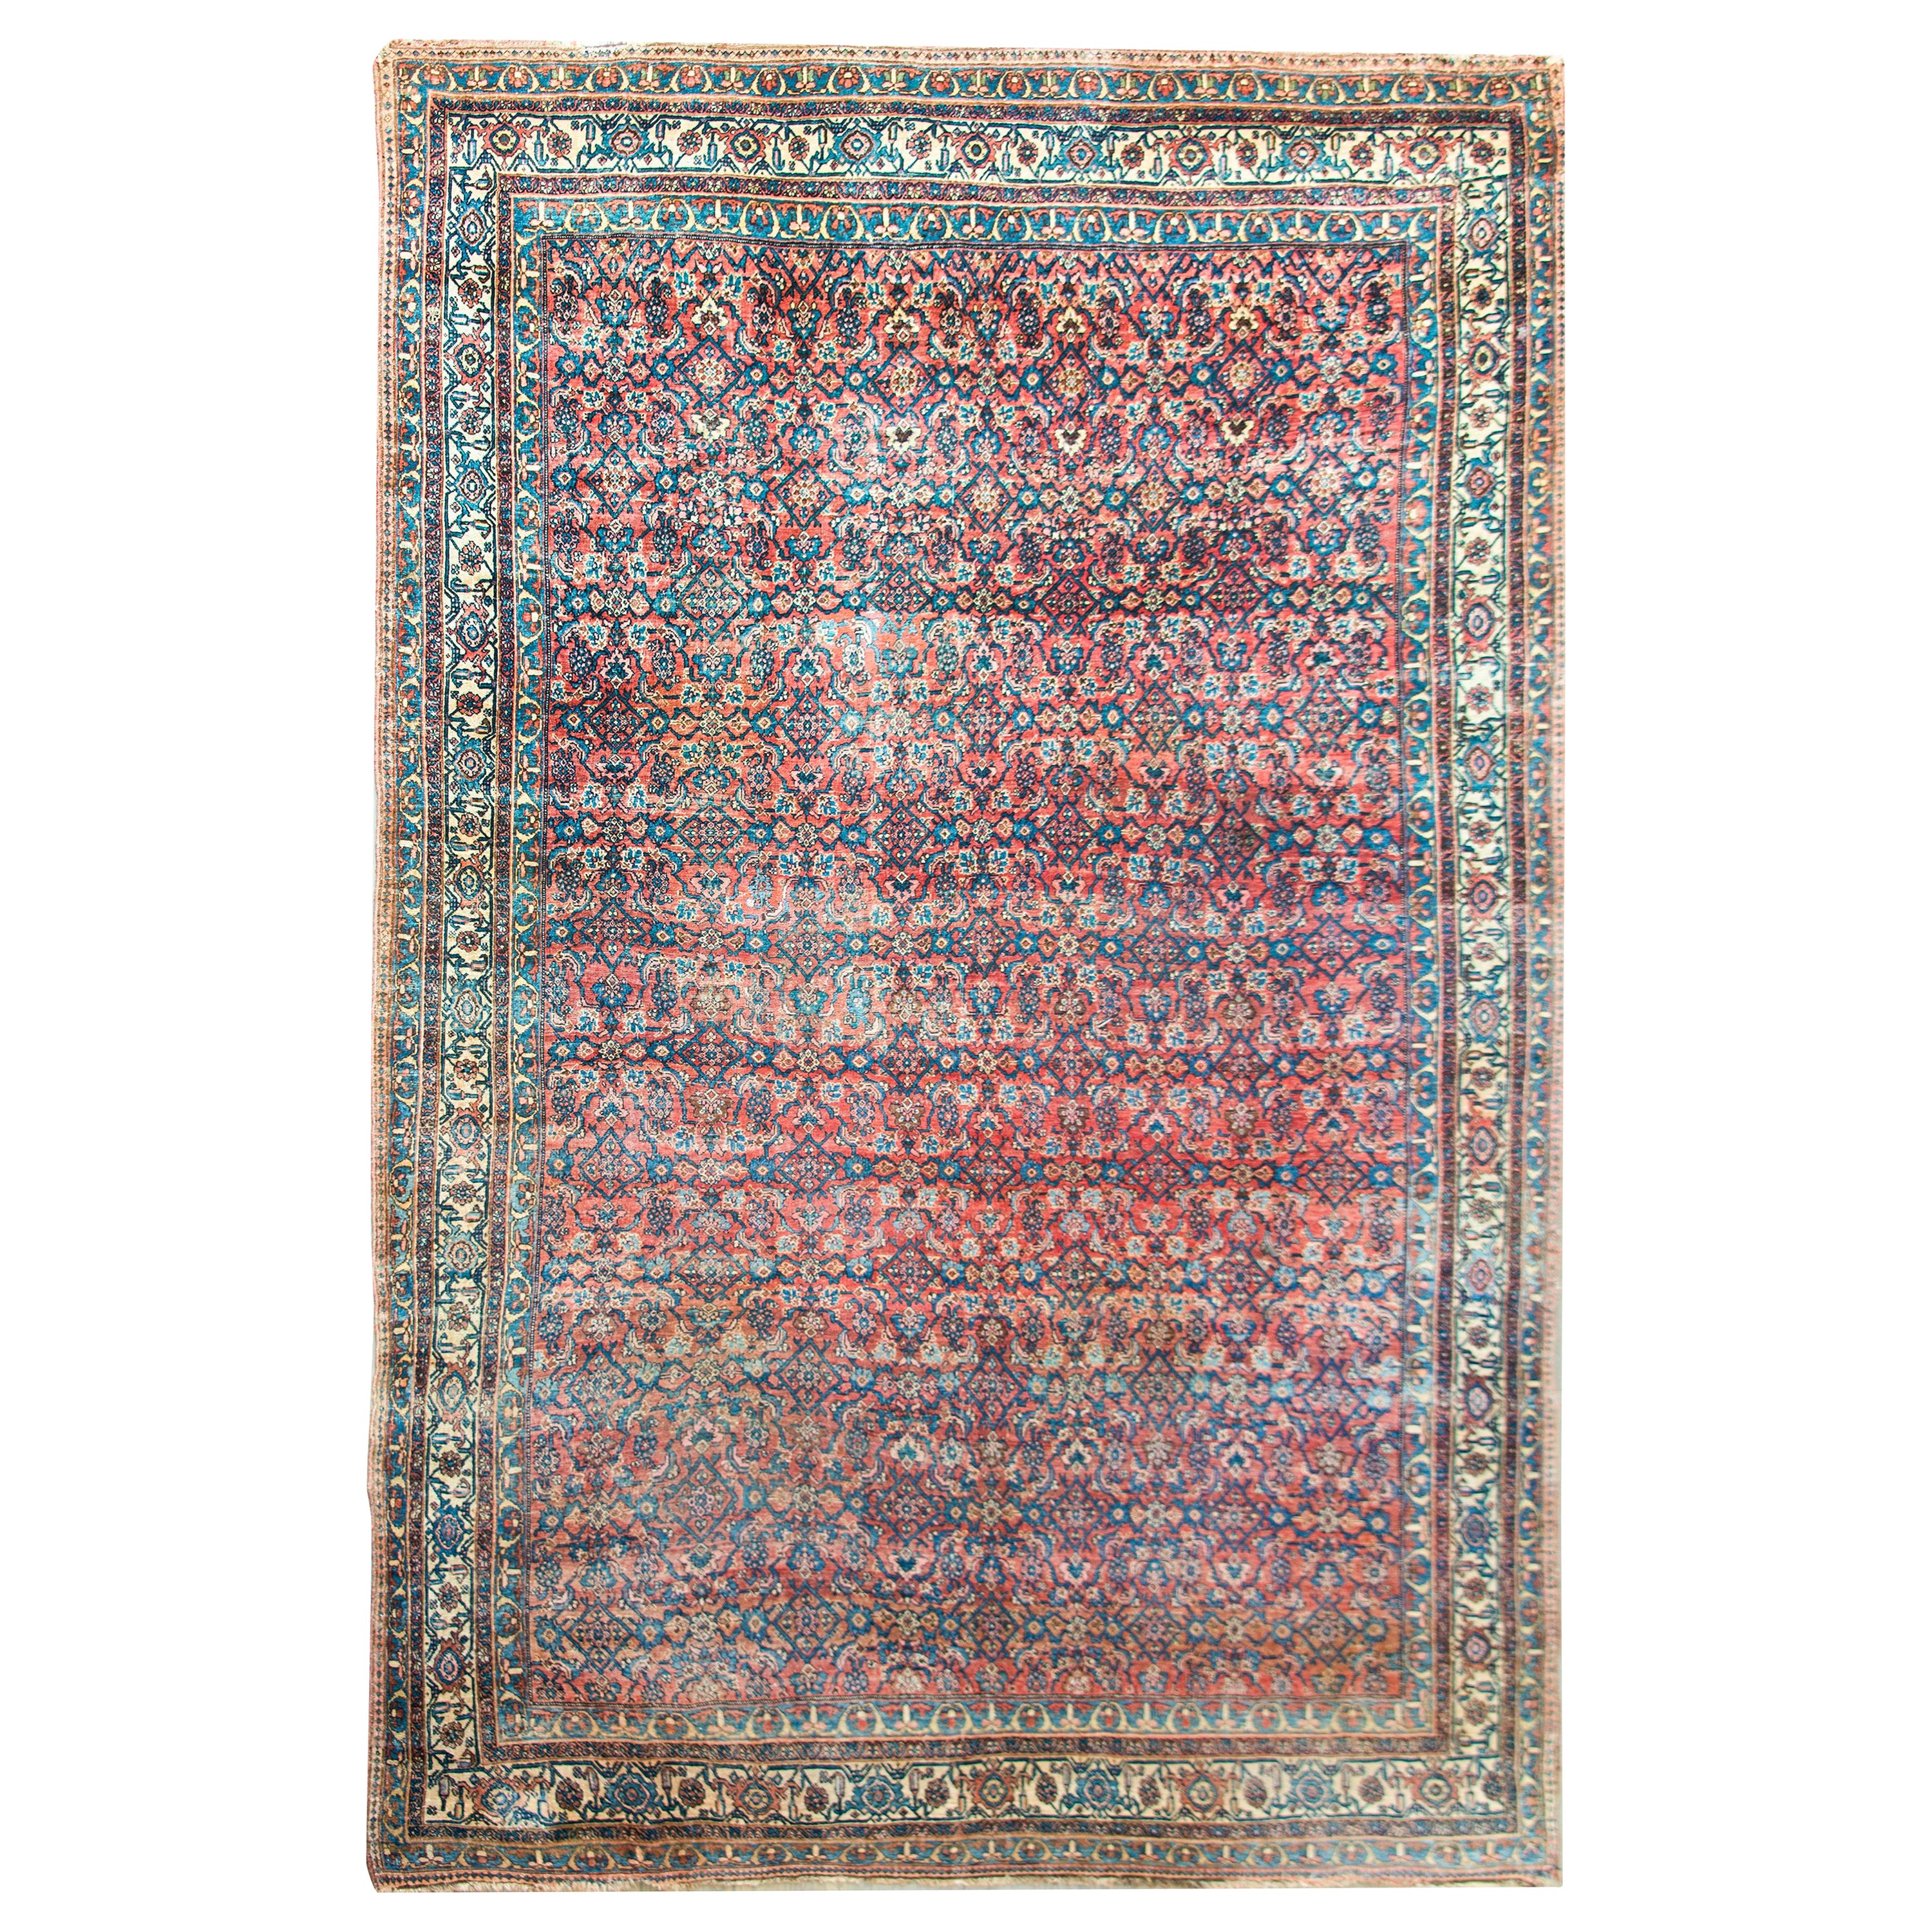 Persischer Bidjar-Teppich aus dem späten 19. Jahrhundert